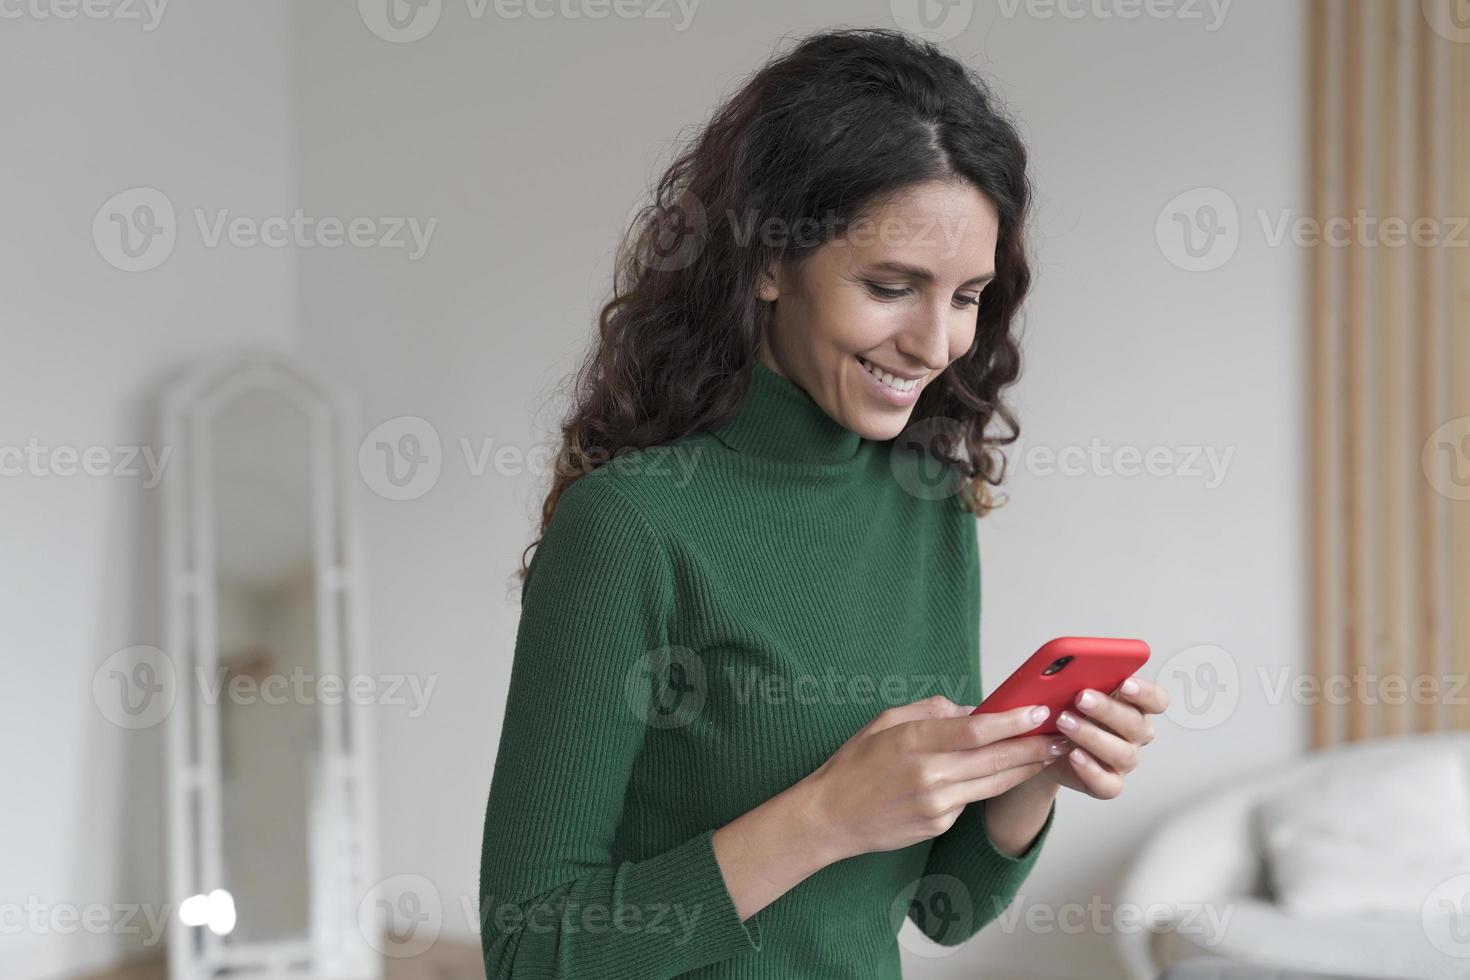 jonge gelukkige Spaanse vrouw met behulp van mobiele telefoon en chatten met vrienden, sms'en op smartphone foto